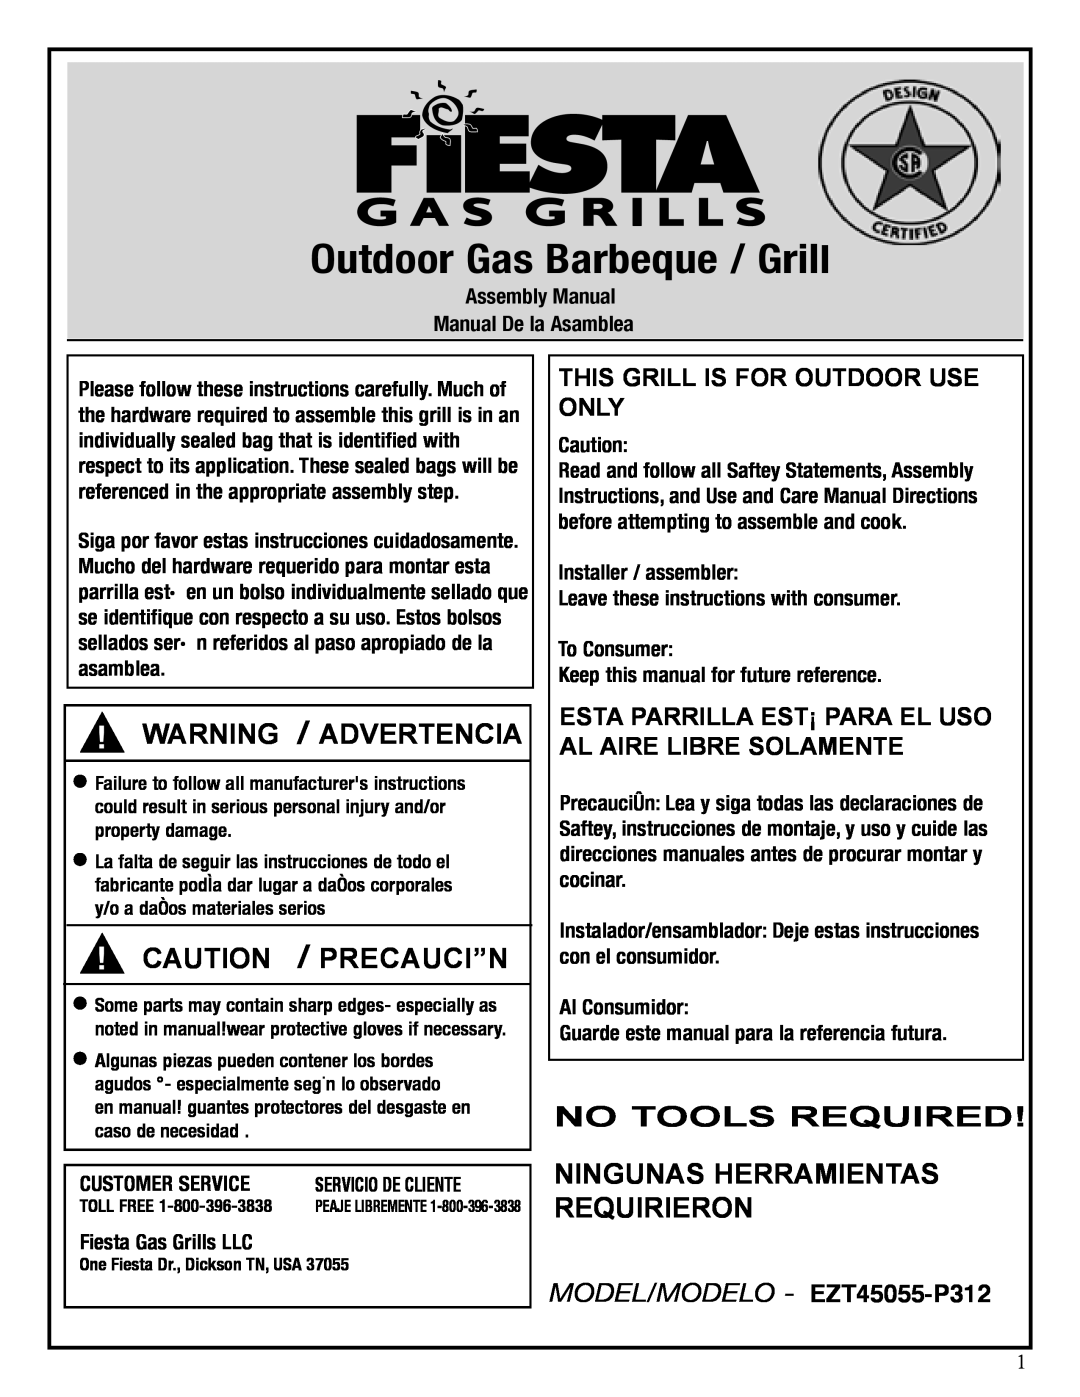 Fiesta EZT45055-P312 manual Warning / Advertencia, Caution / Precauci”N, Assembly Manual Manual De la Asamblea 